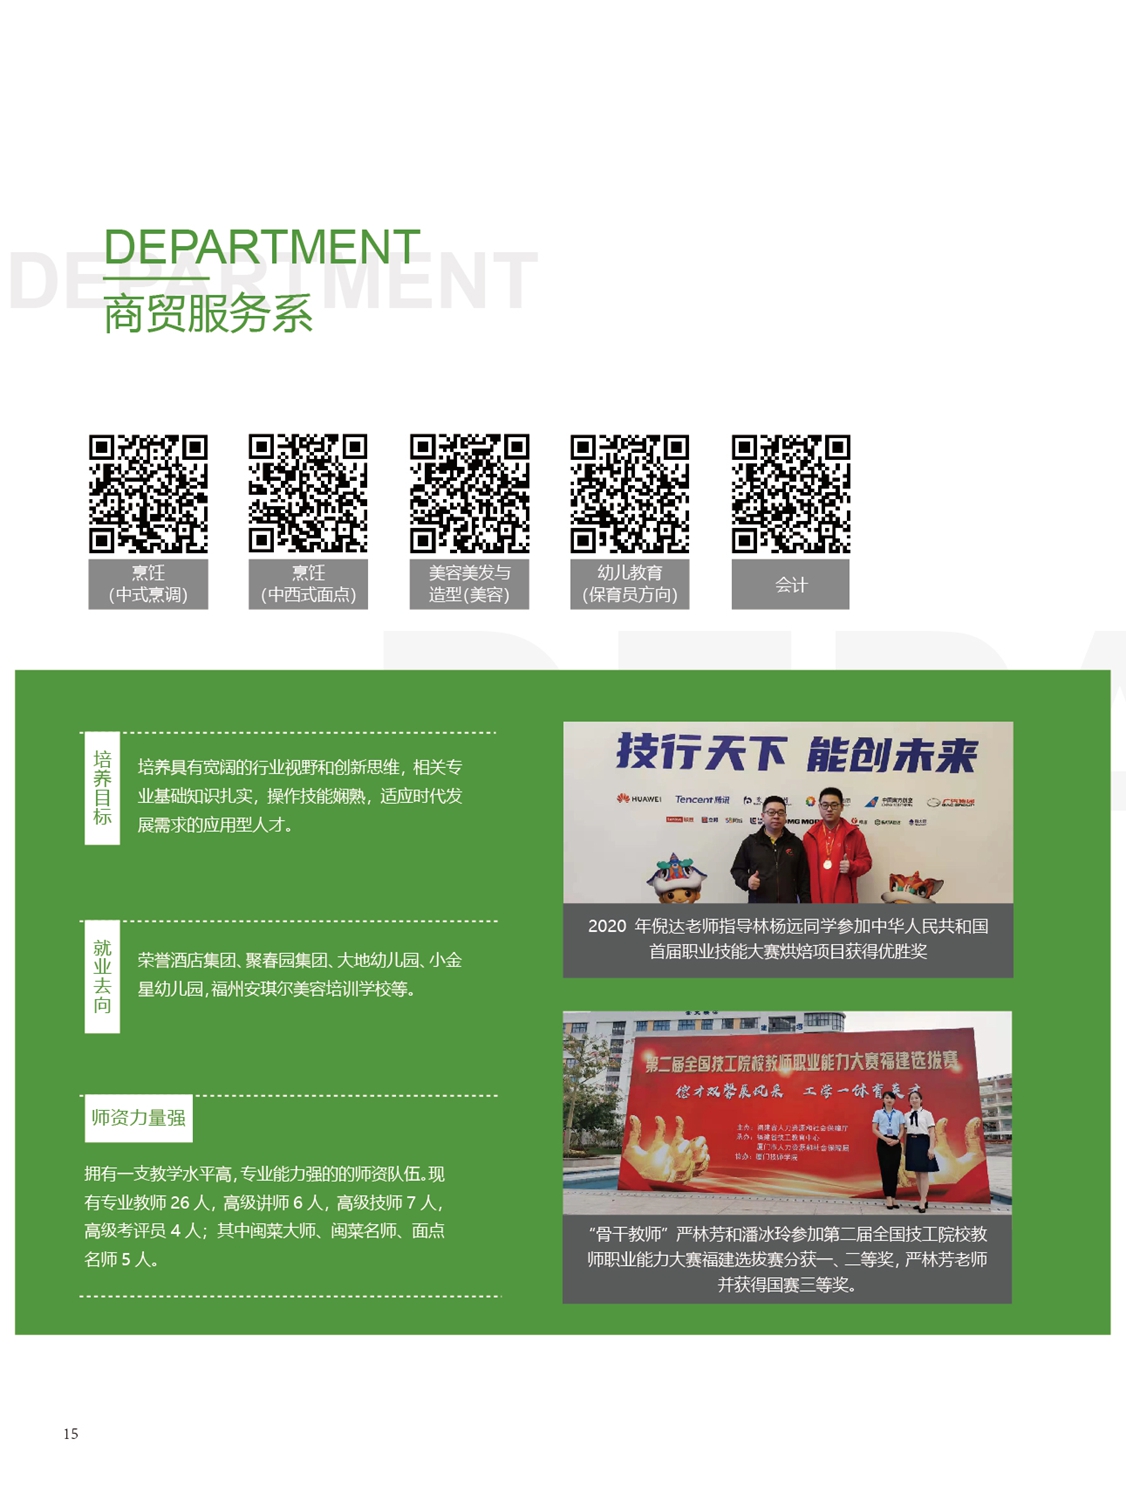 福州第一技师学院2021年招生手册(图16)